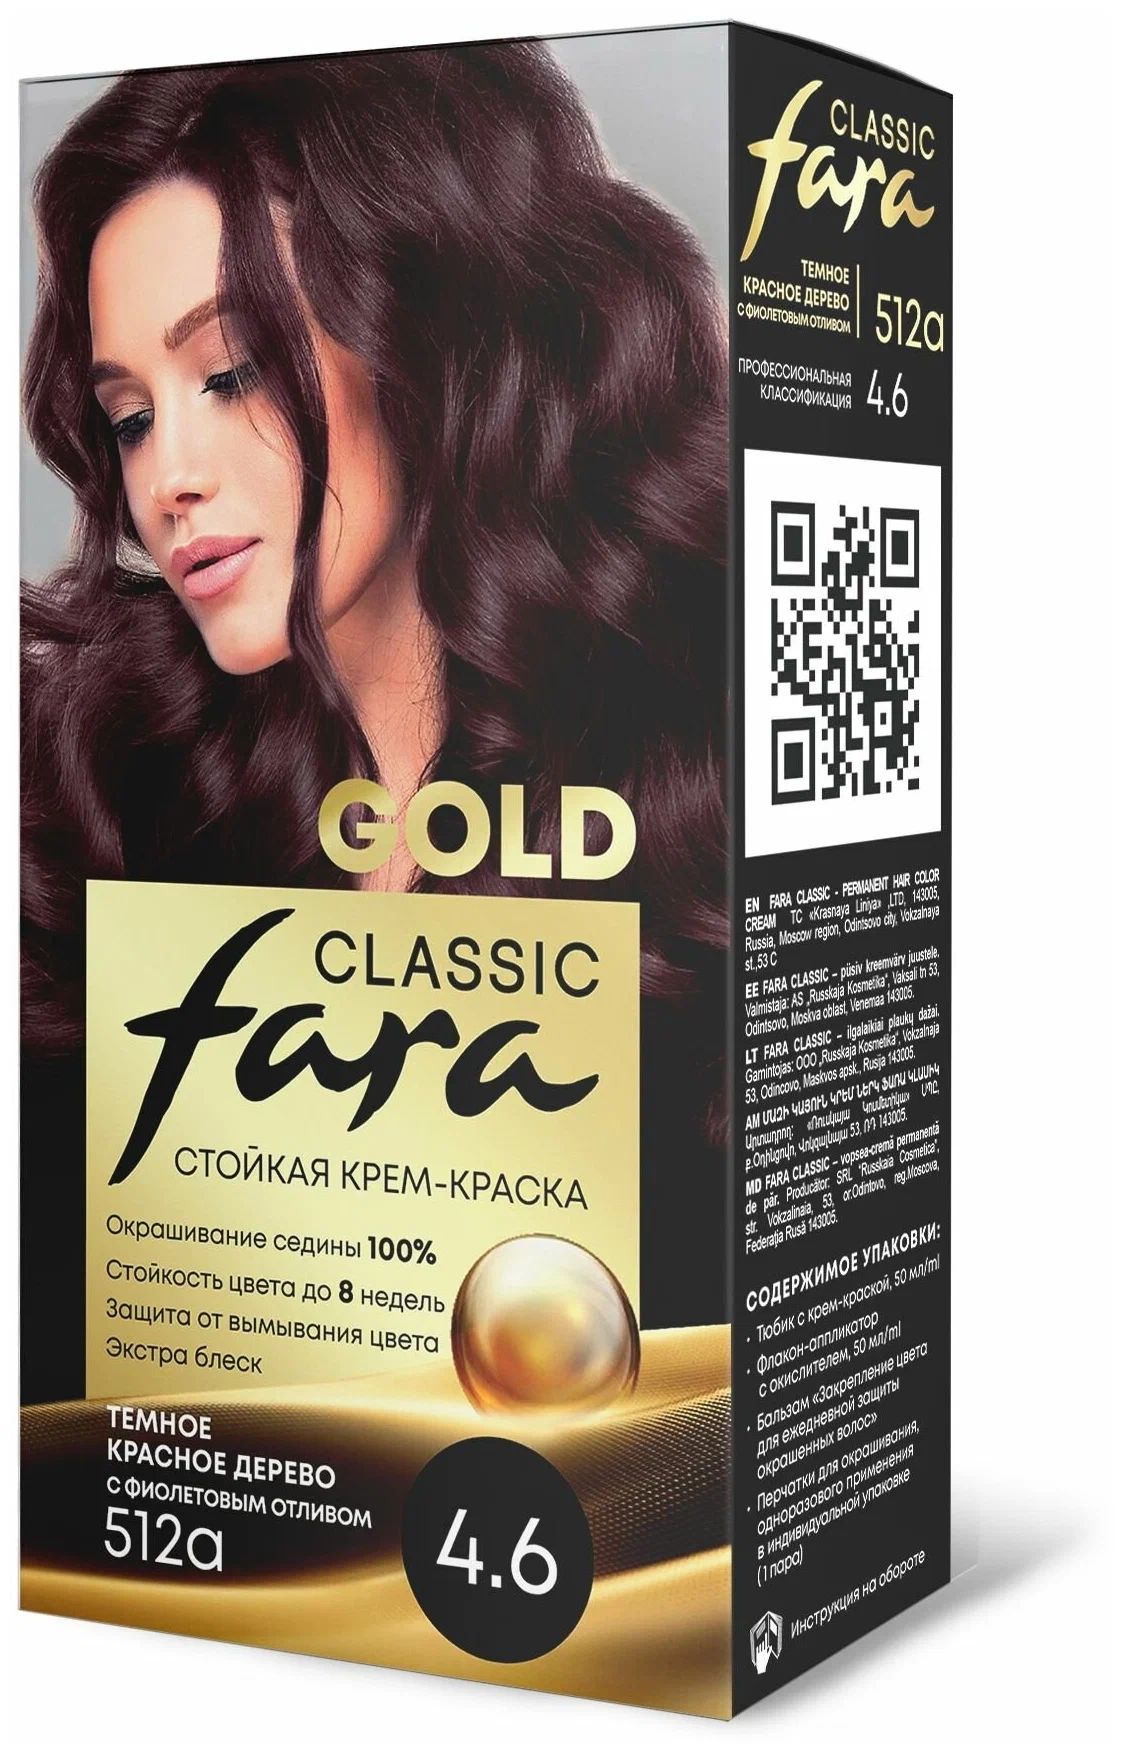 Крем-краска для волос Fara Classic Gold 512А красное дерево 4.6, 140 г расческа для волос freshman мужская collection carbon